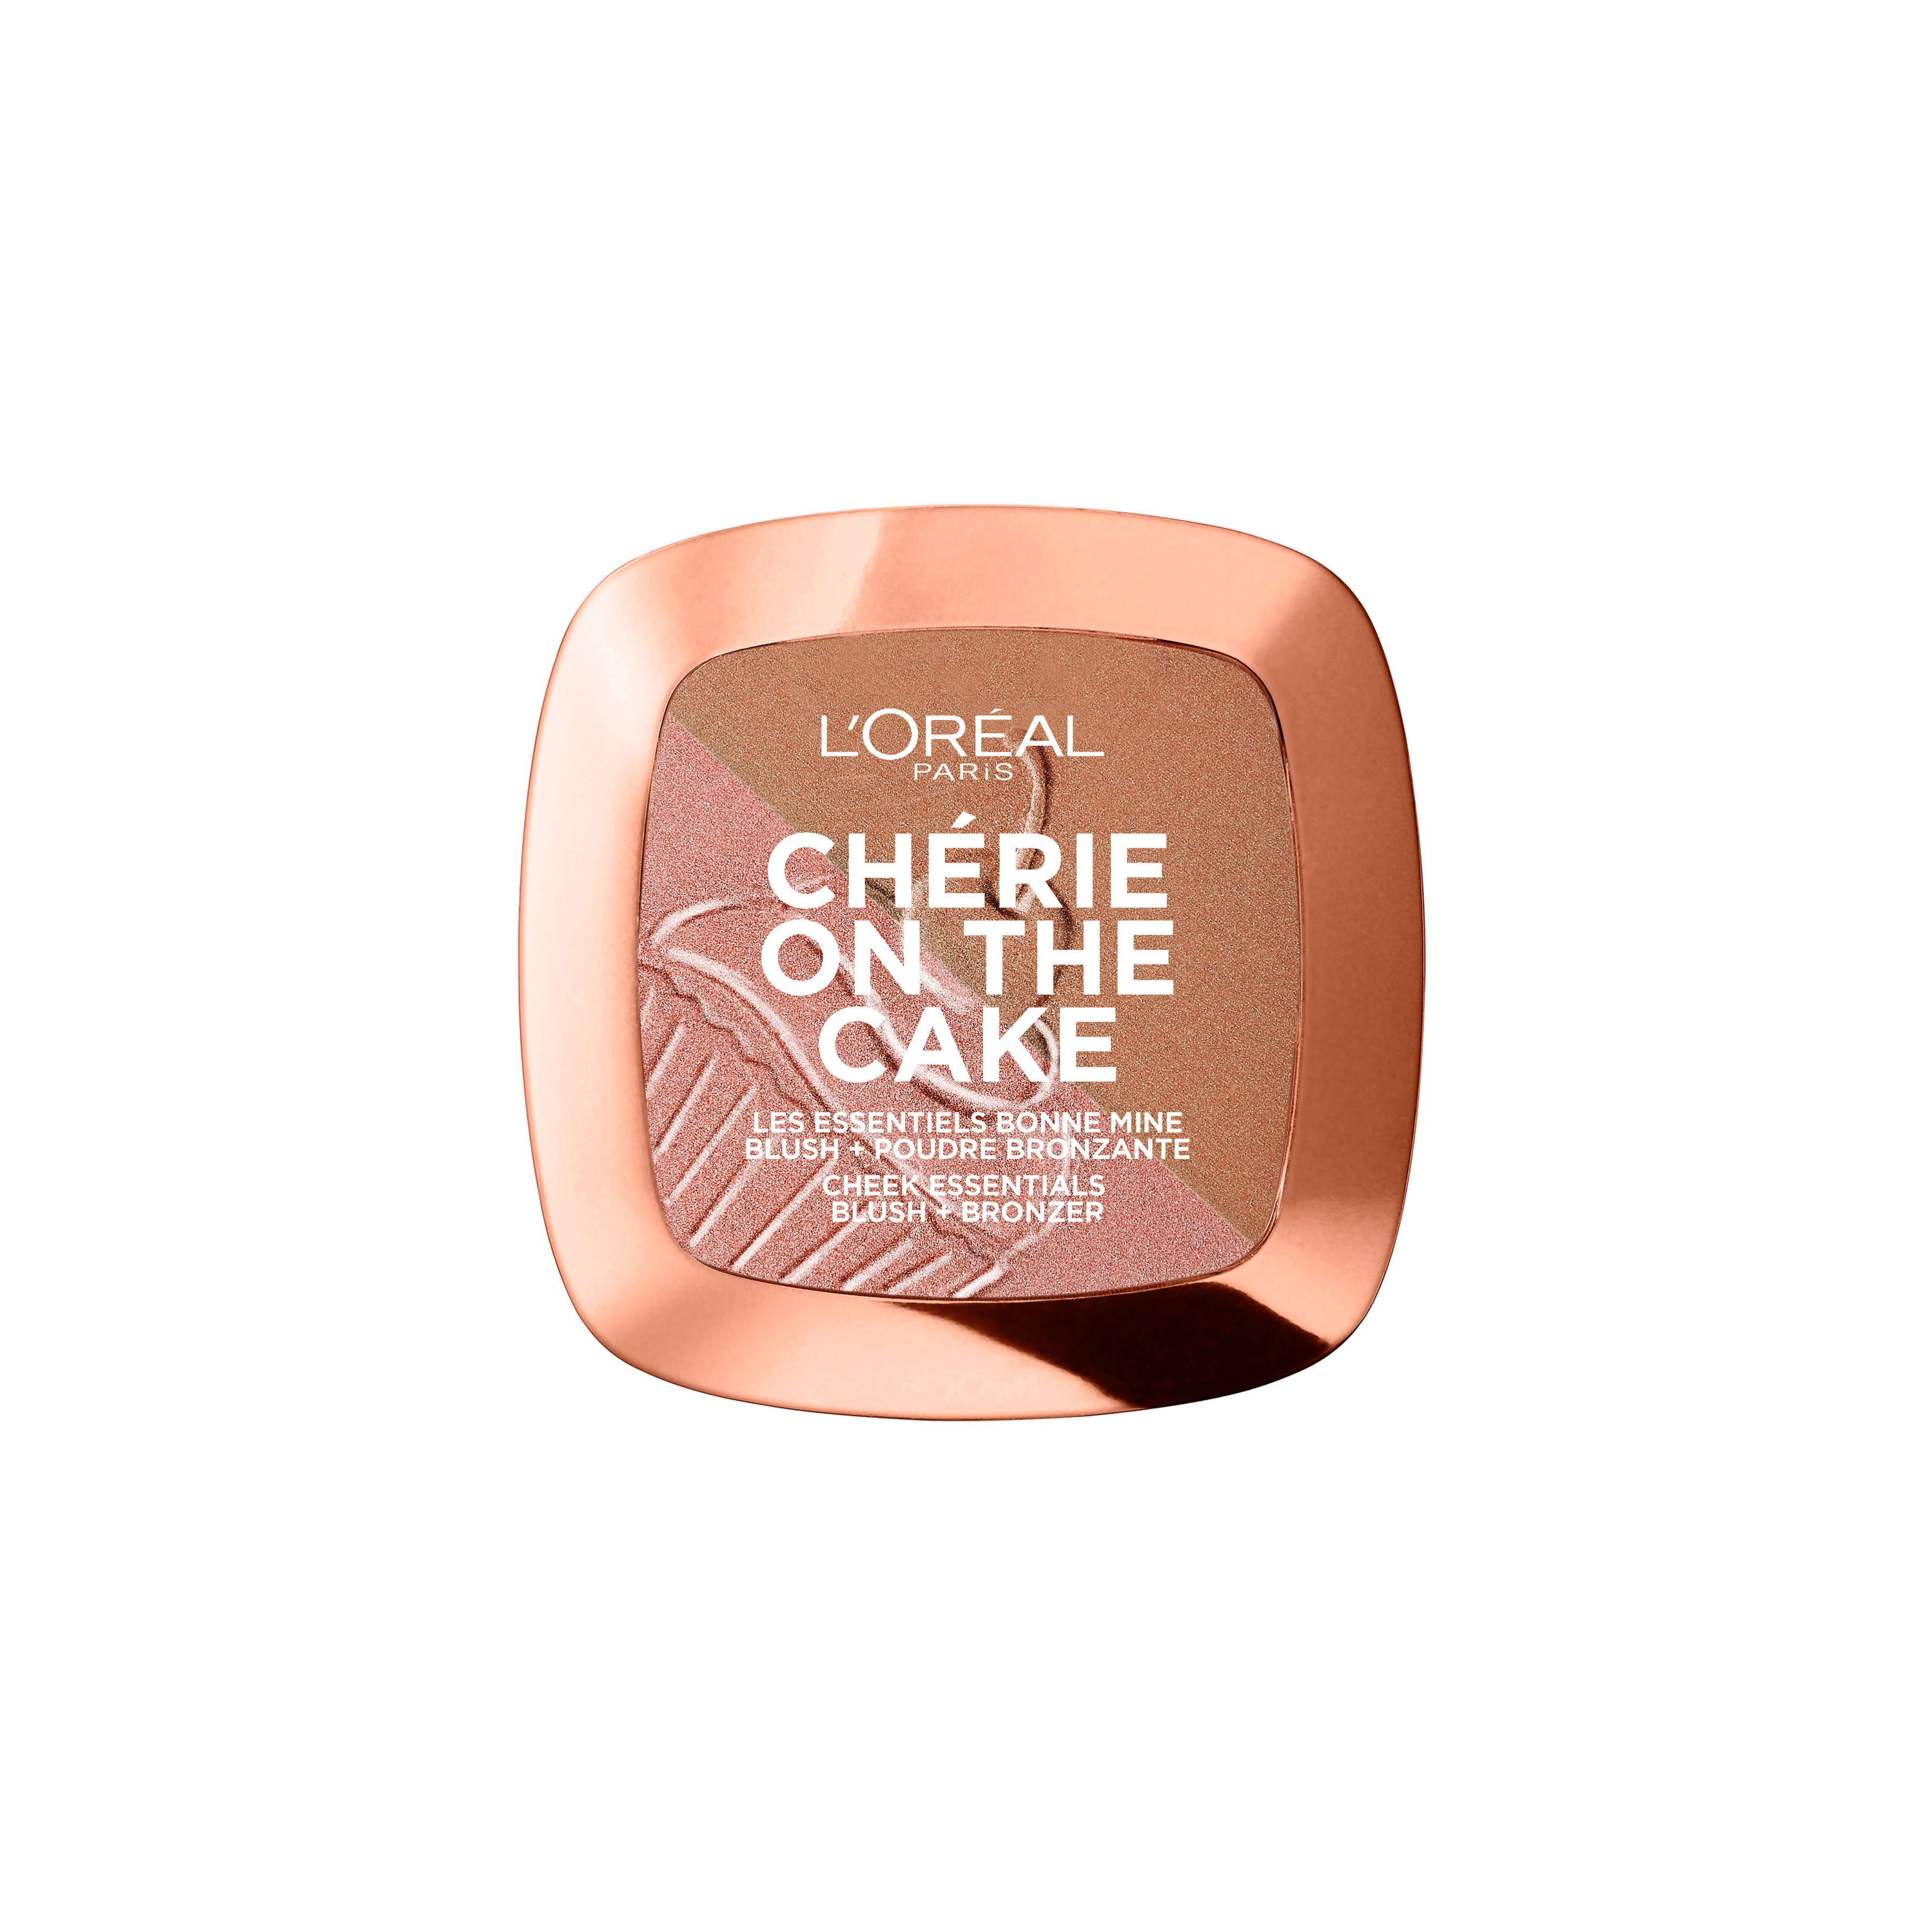 Бронзер-румяна для лица L’Oréal Paris Cherie on the cake, 9 г